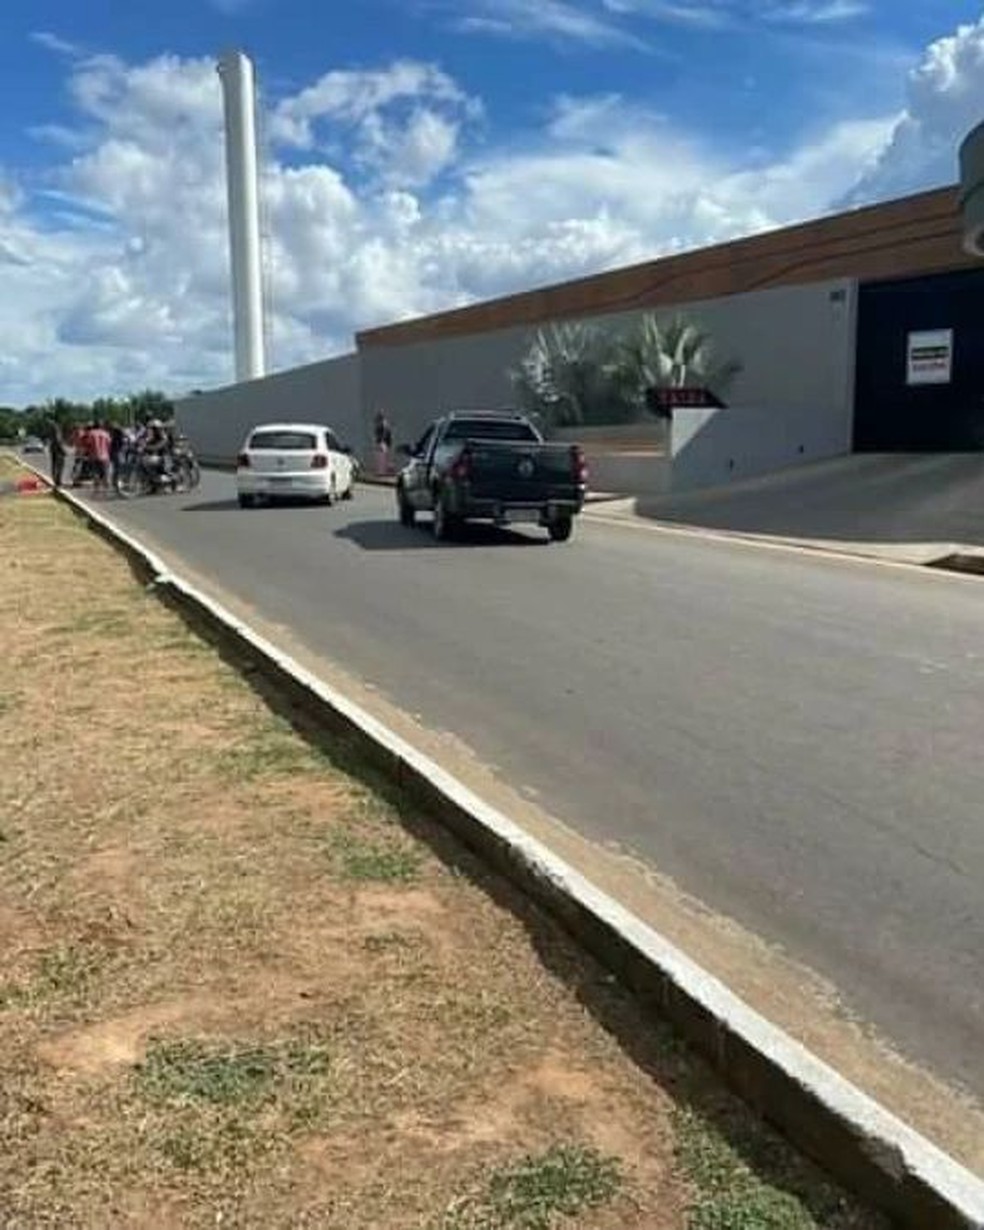 Homicídio foi em frente a um motel de luxo na zona Oeste de Boa Vista — Foto: Reprodução/Instagram/Diariororaimense